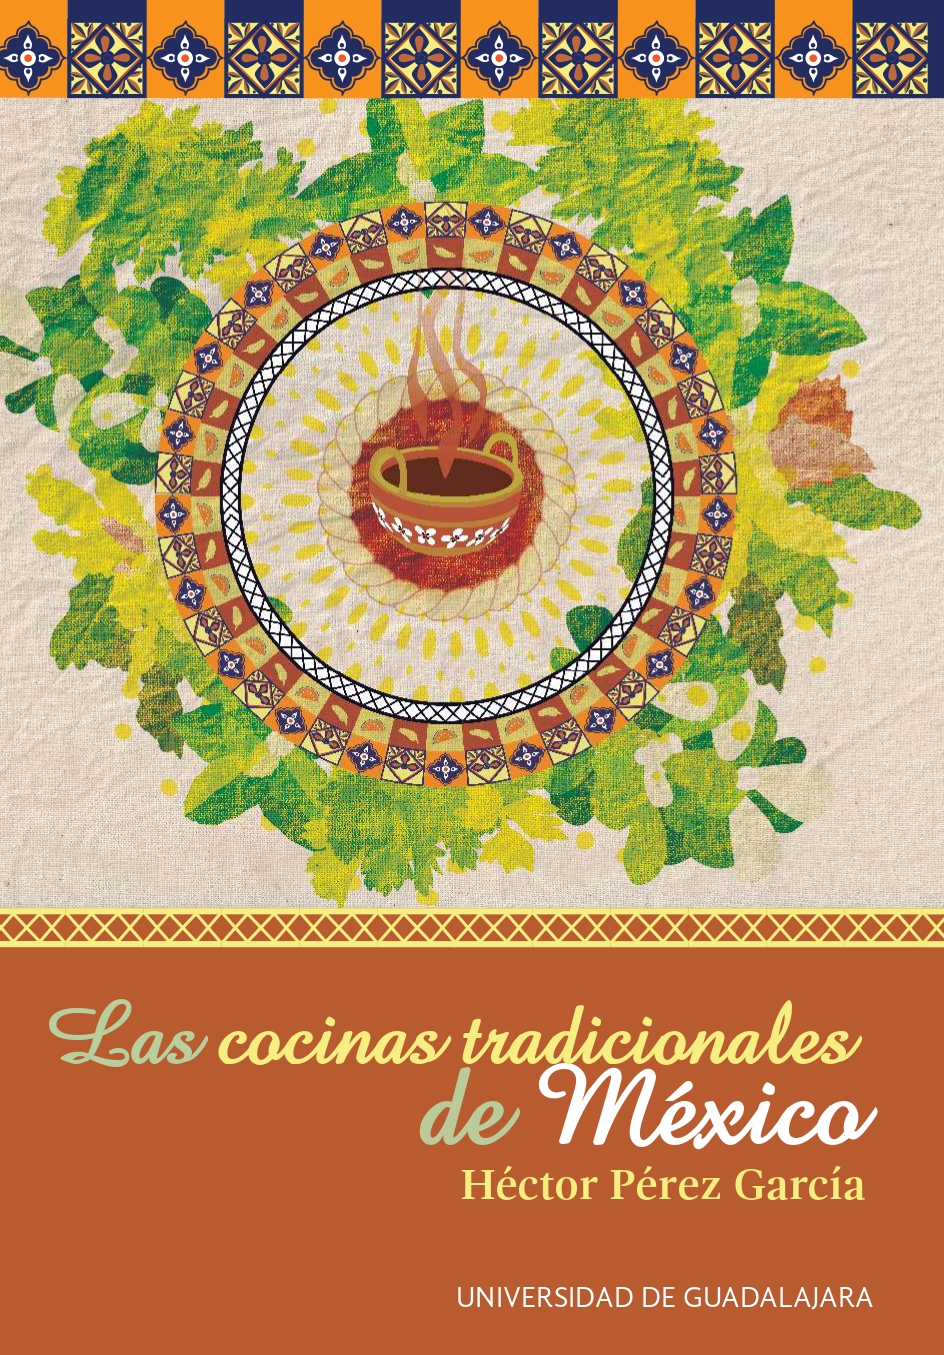 Las cocinas tradicionales de México - 2017